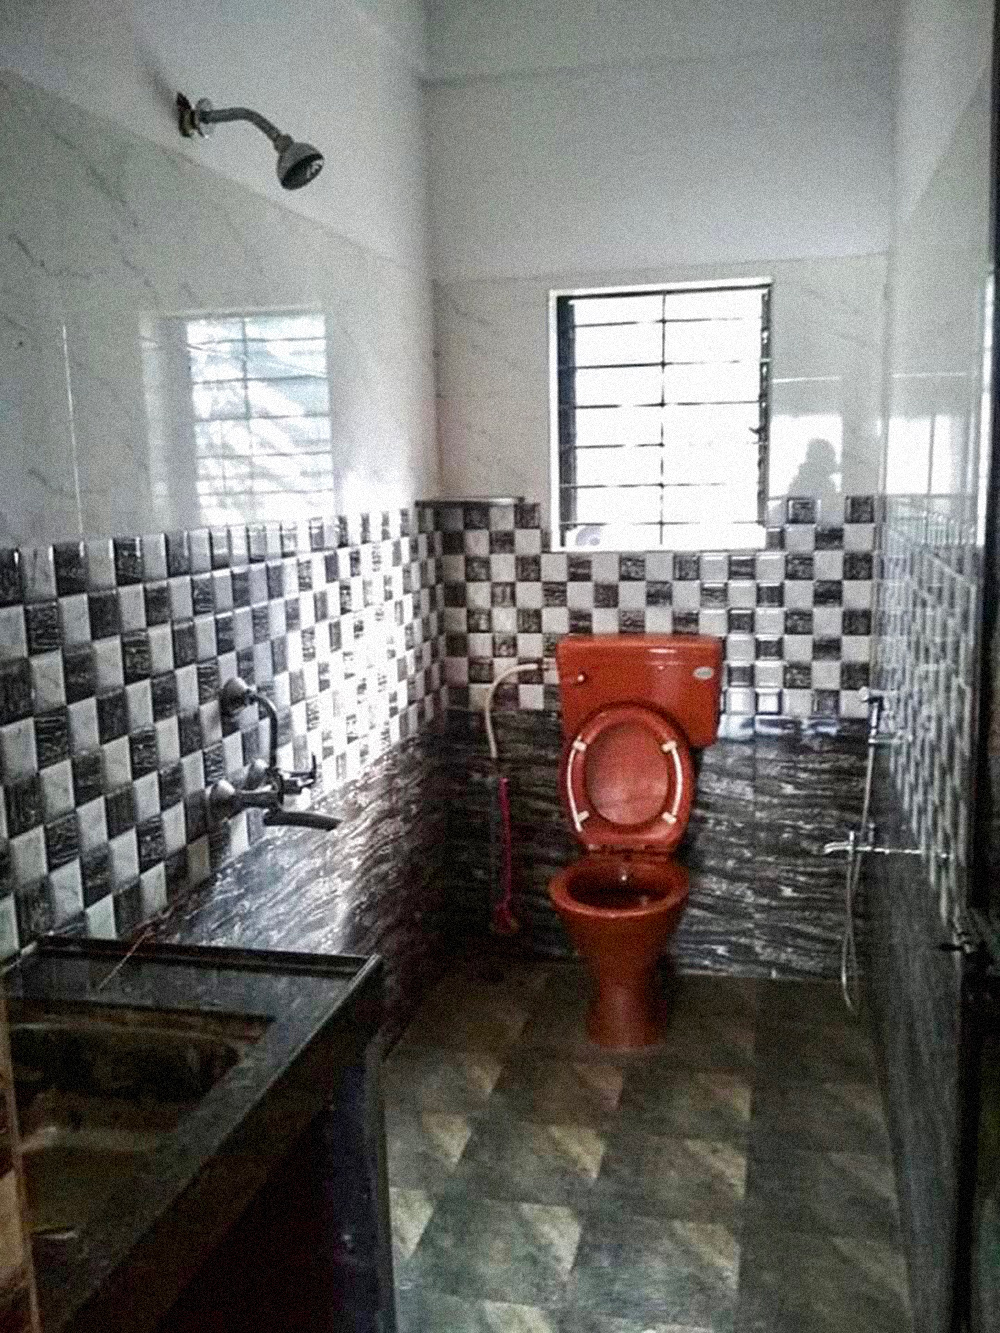 Такой санузел в Гоа ласково называют «душалет»: унитаз с лейкой для гигиенических потребностей, а рядом на стене обычный душ. Слив находится в углу, около унитаза